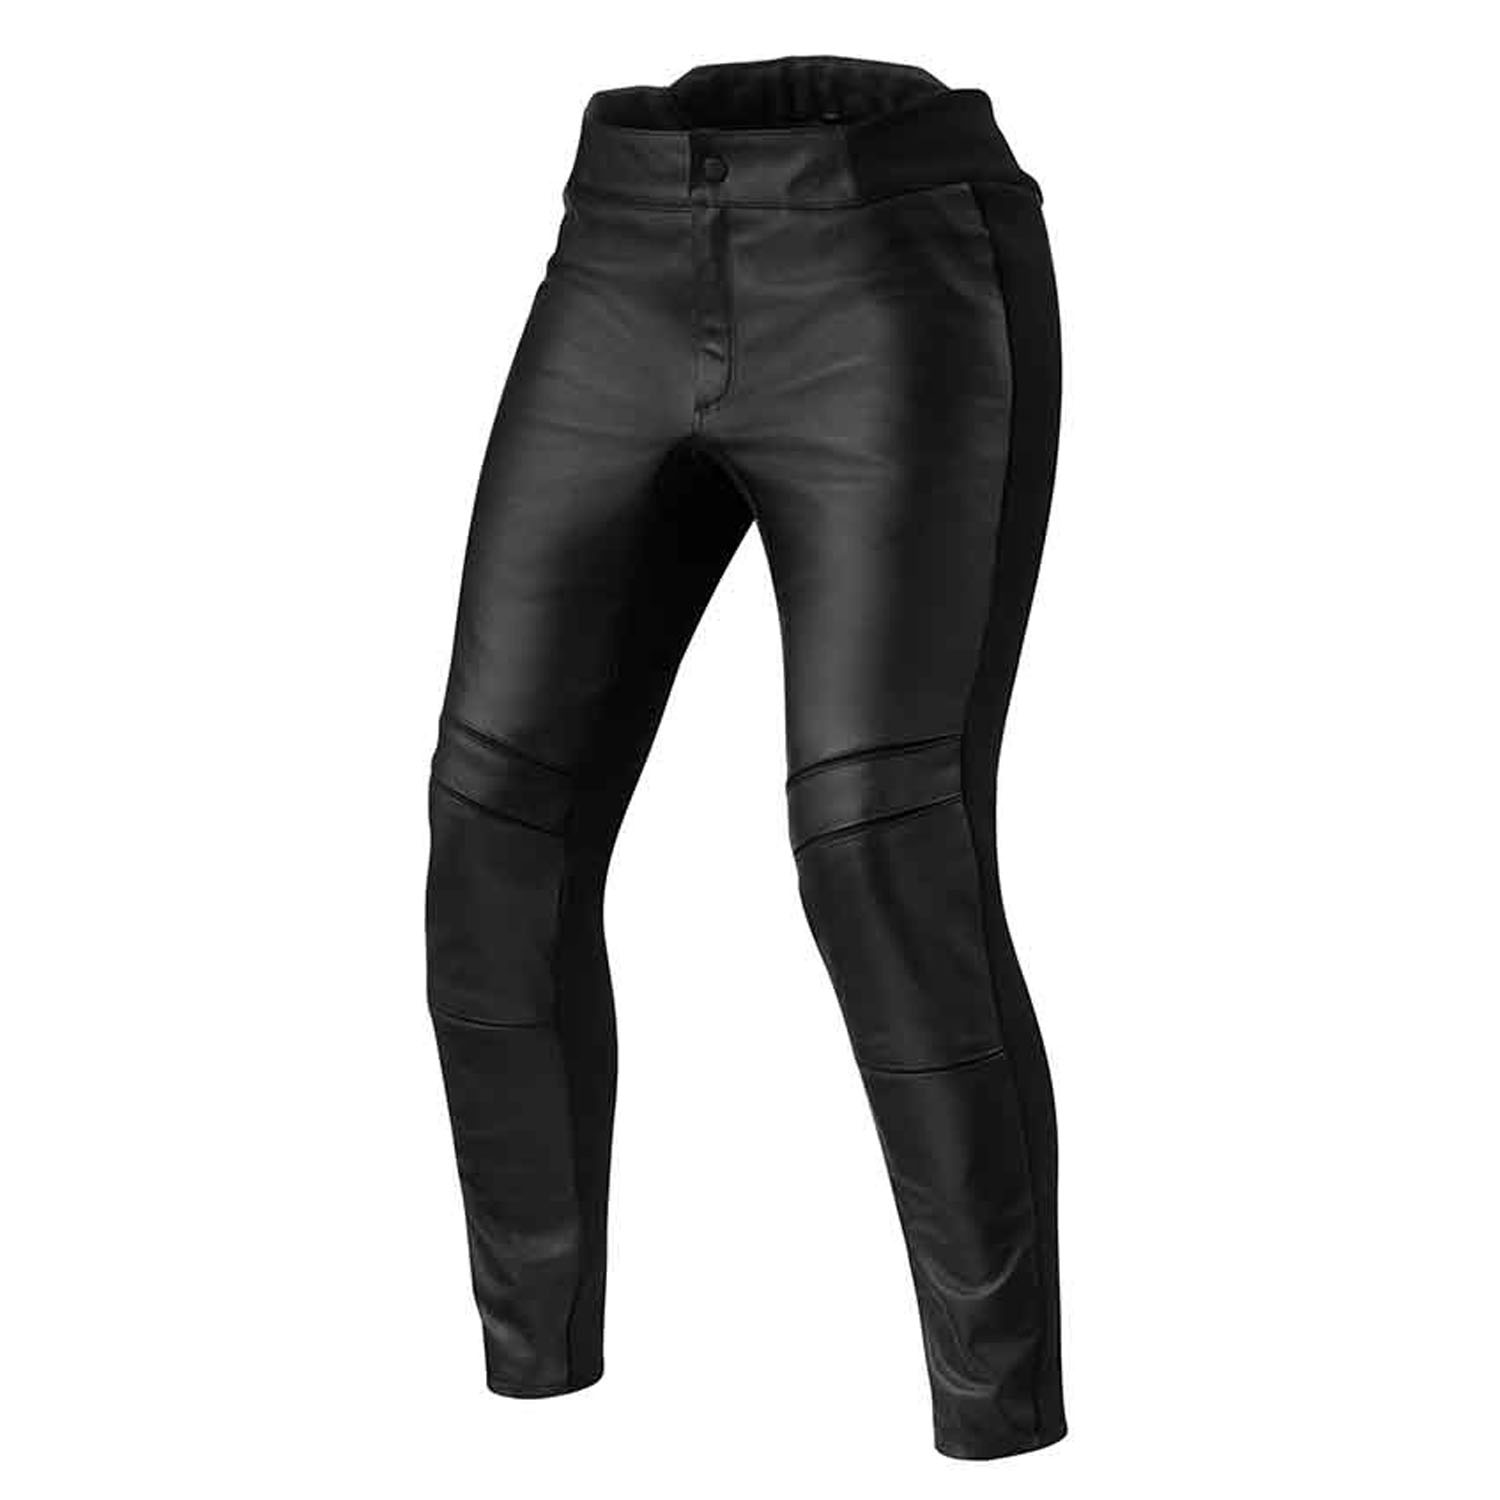 Image of EU REV'IT! Maci Ladies Black Short Motorcycle Pants Taille 42